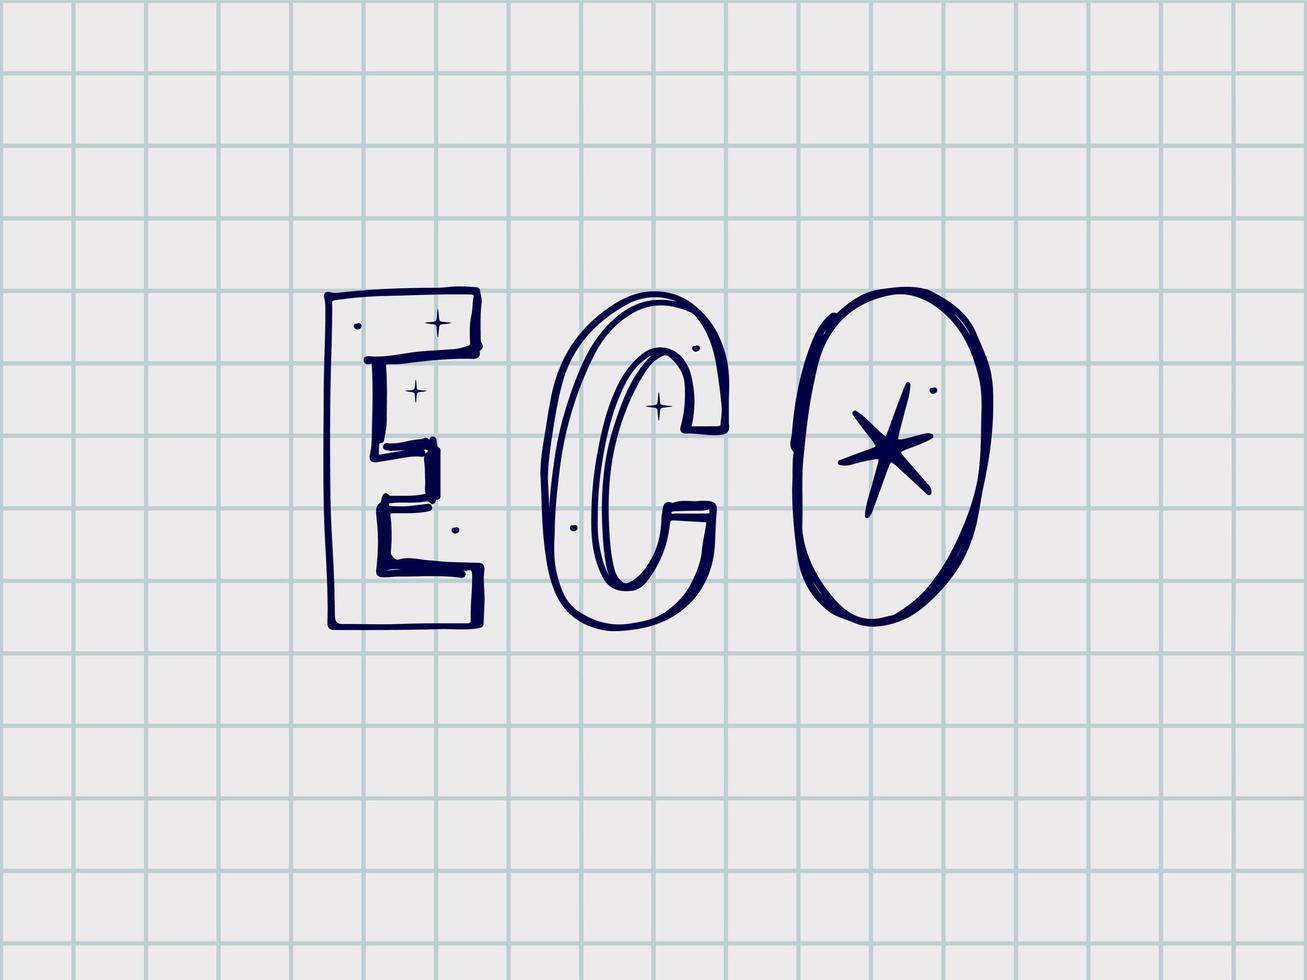 Vektor-Illustration des Wortes Öko mit den Blättern. vektor